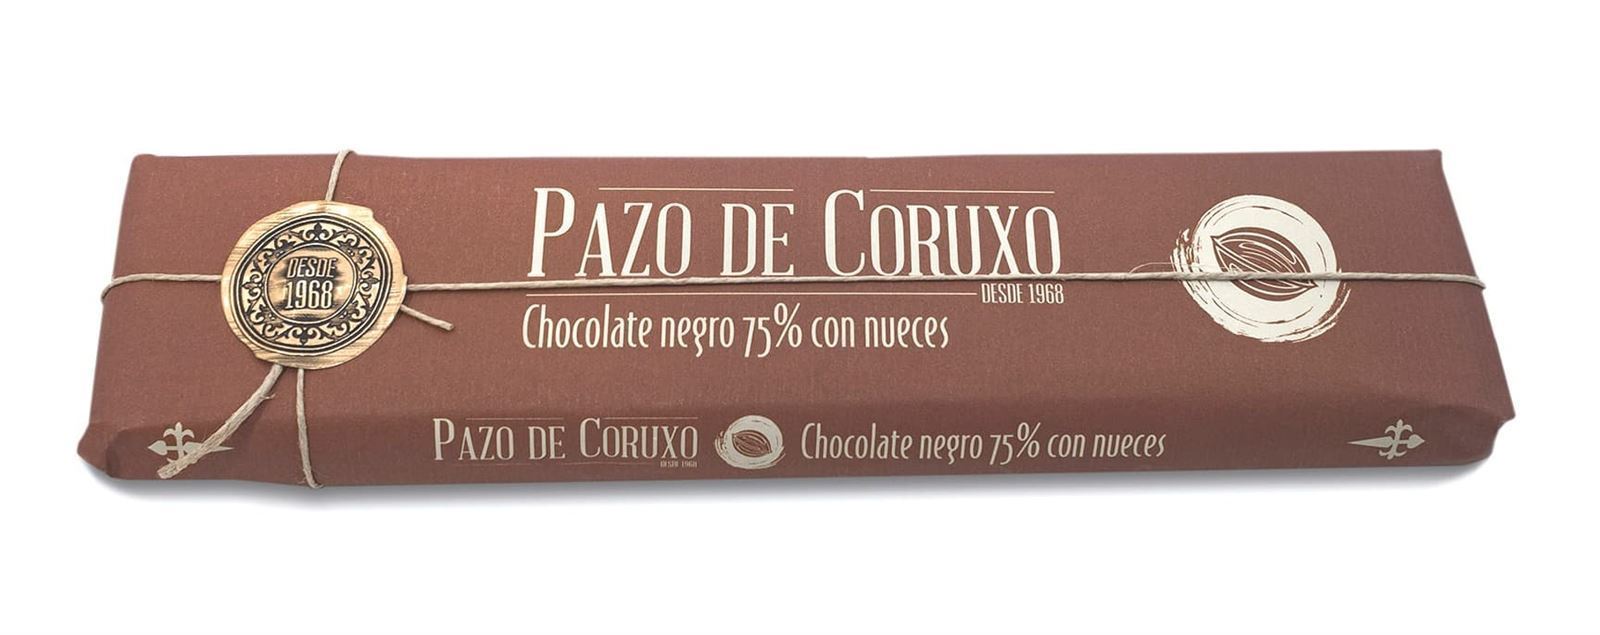 TABLETA CHOCOLATE NEGRO 75% CON NUECES PAZO DE CORUXO 300grs - Imagen 1